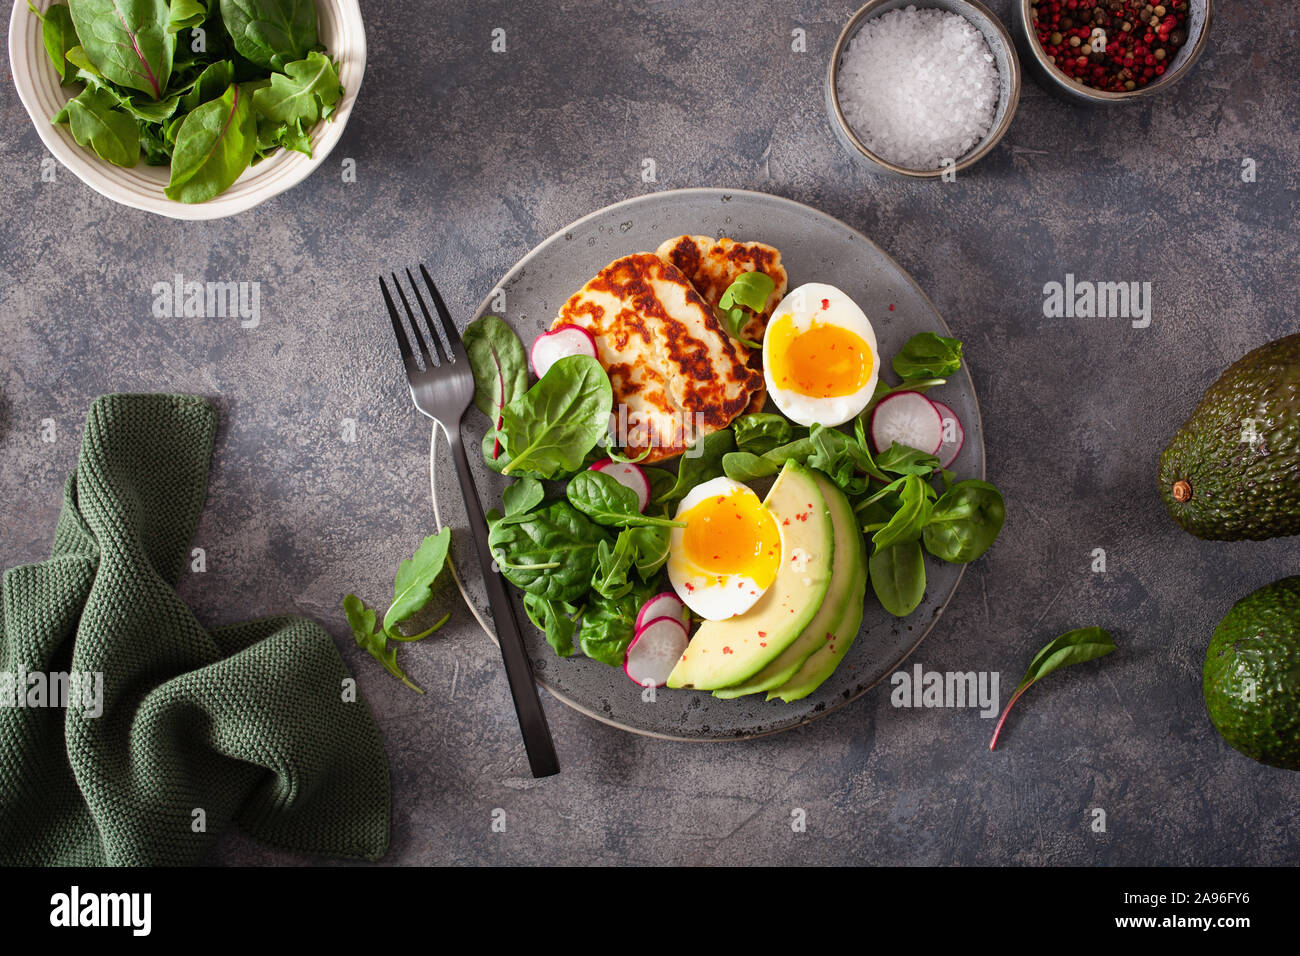 Régime alimentaire sain paléo céto petit-déjeuner : oeuf dur, avocat, fromage Halloumi, salades Banque D'Images